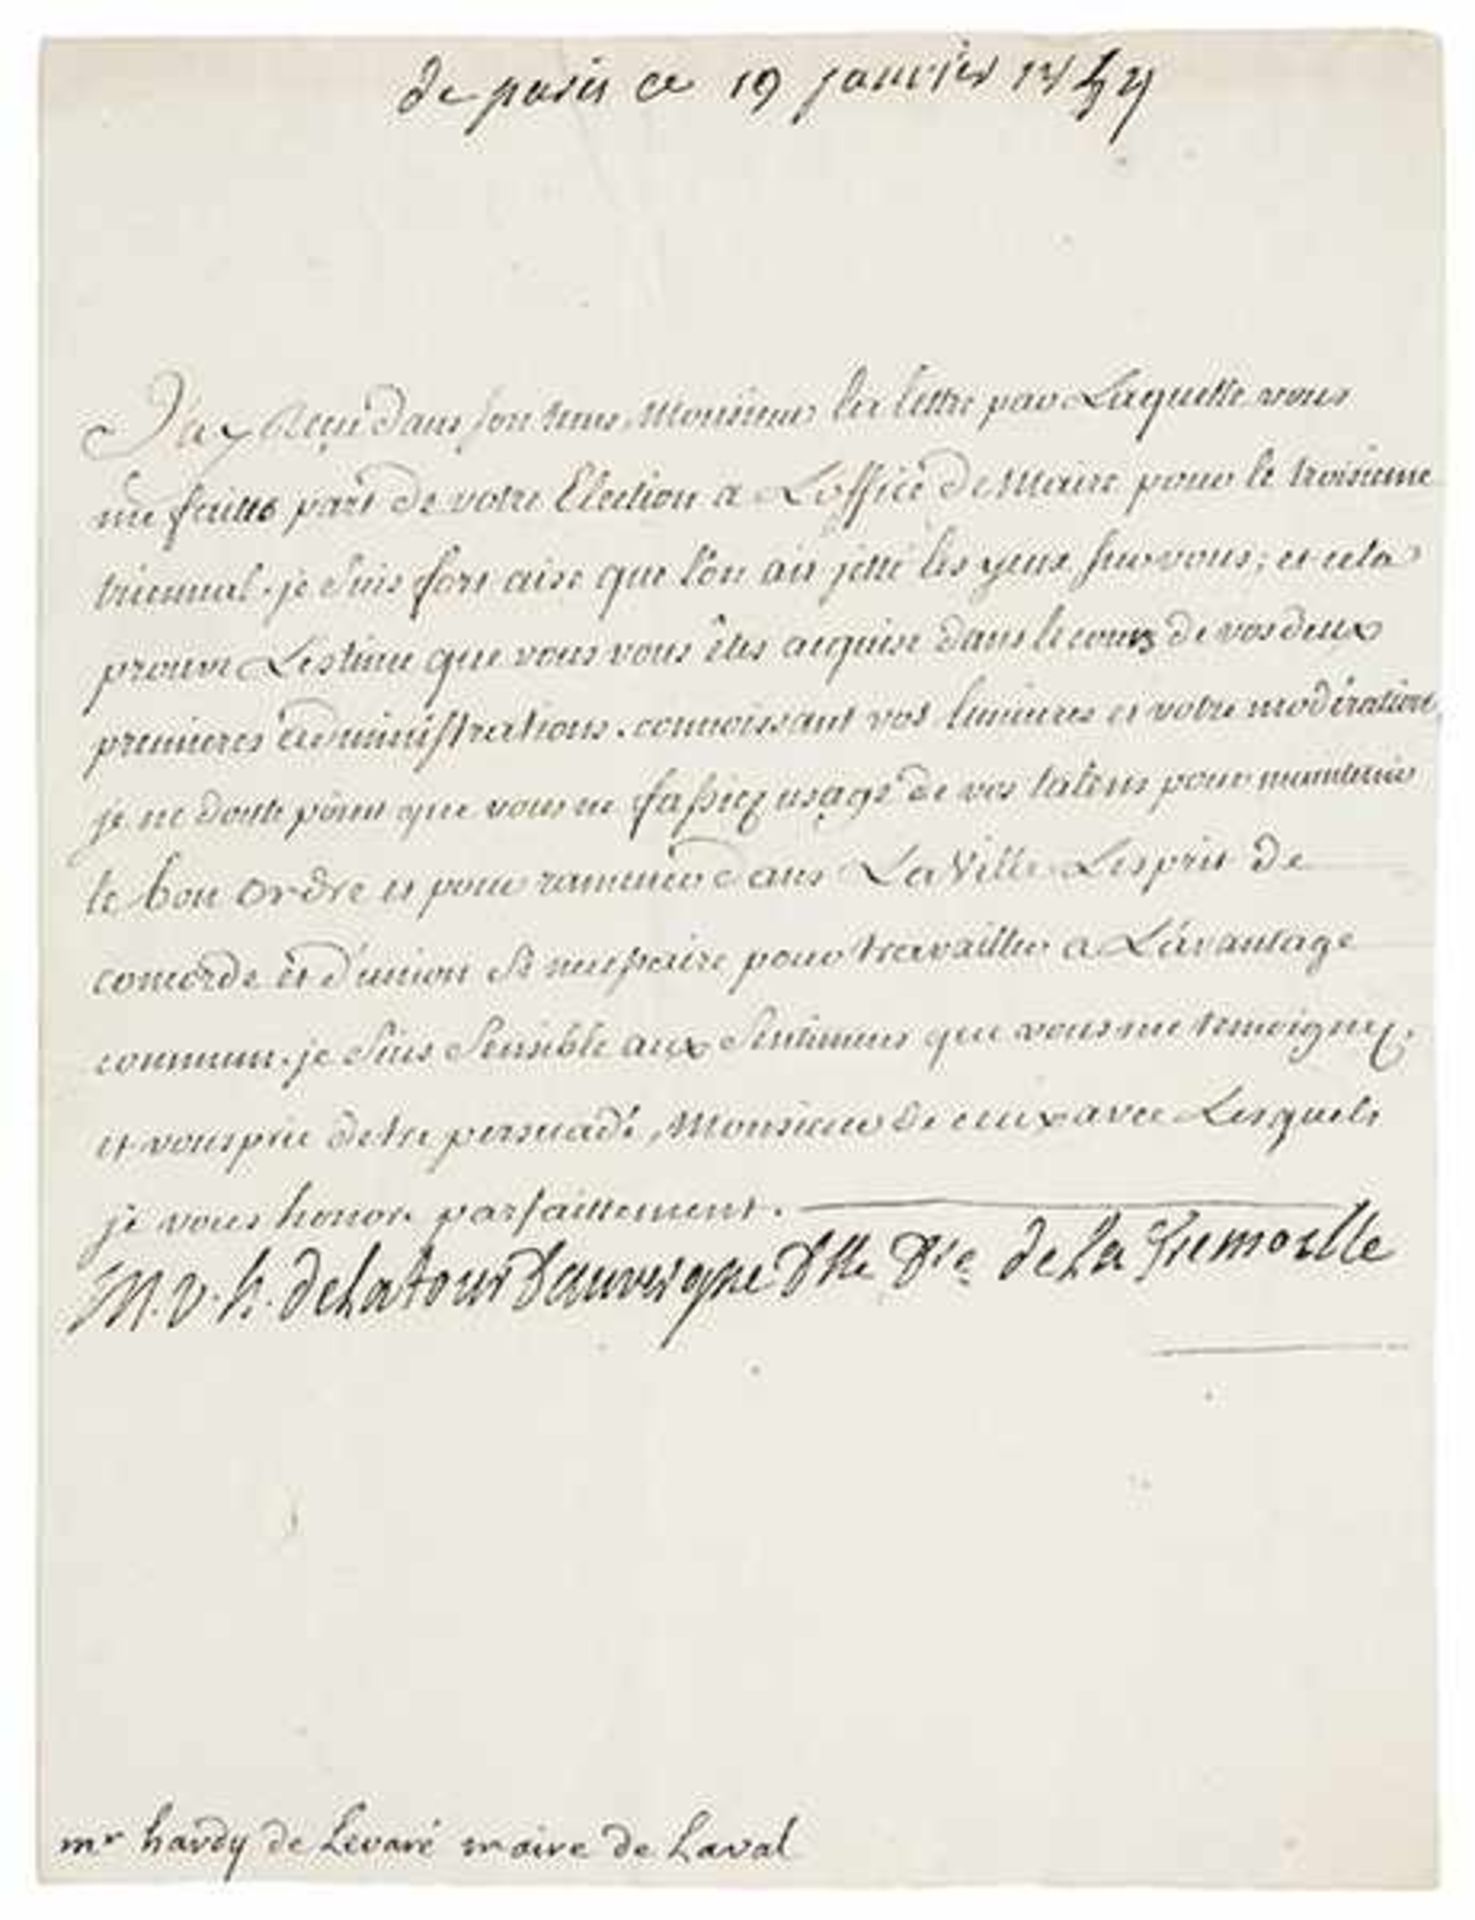 Tour d'Auvergne, Théophile Malo Corret de la. Eigenhändiger unterschriebener Brief, adressiert an